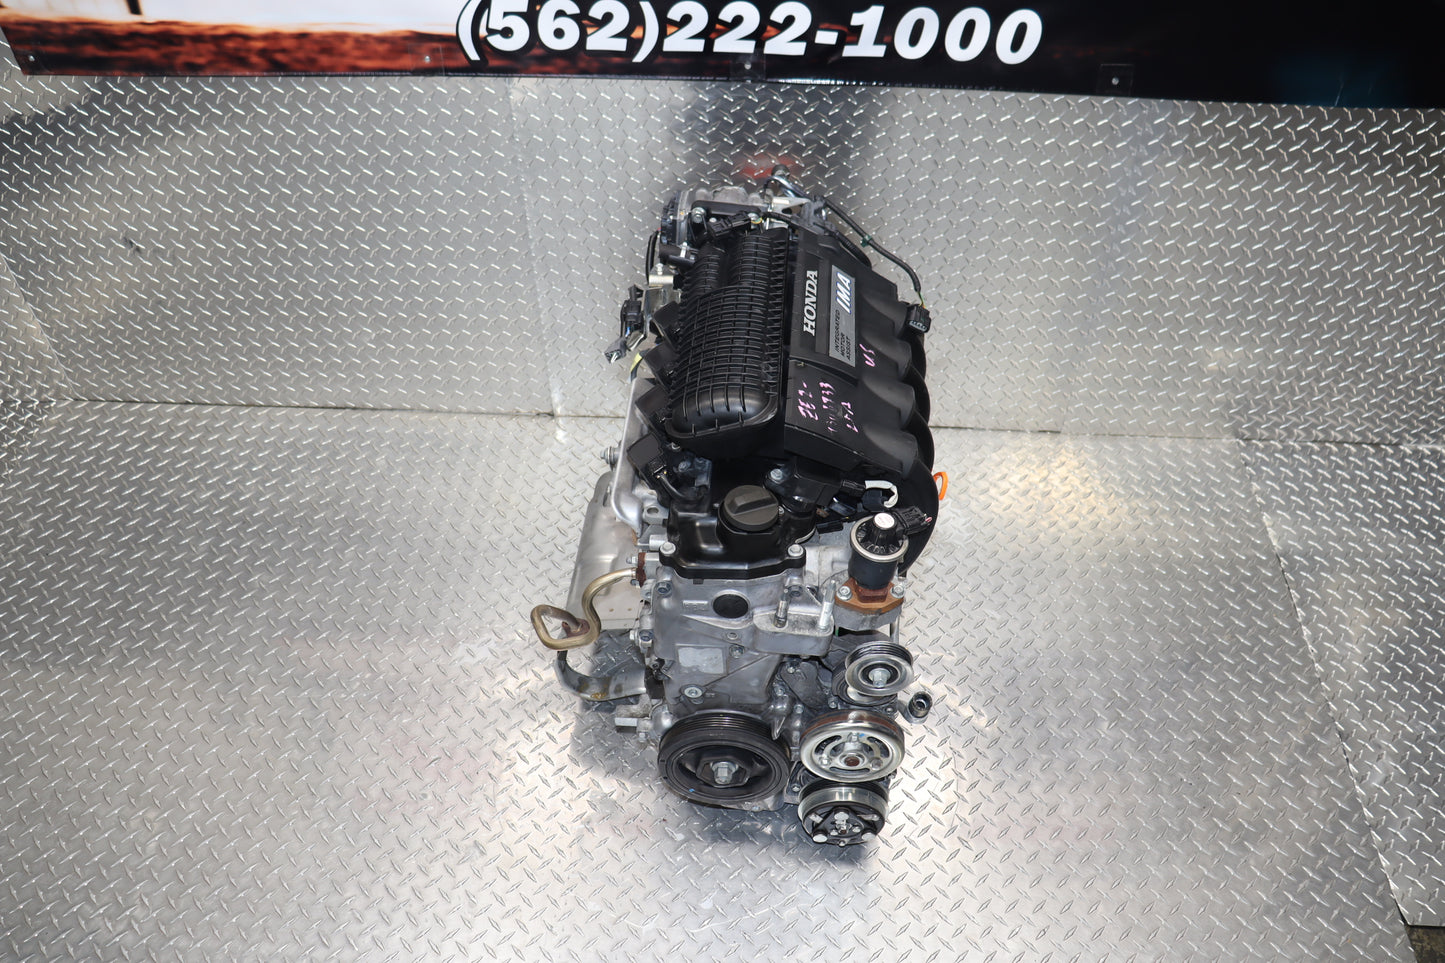 JDM LDA MF6 2010 - 2014 HONDA INSIGHT 1.3L SOHC HYBRID ENGINE